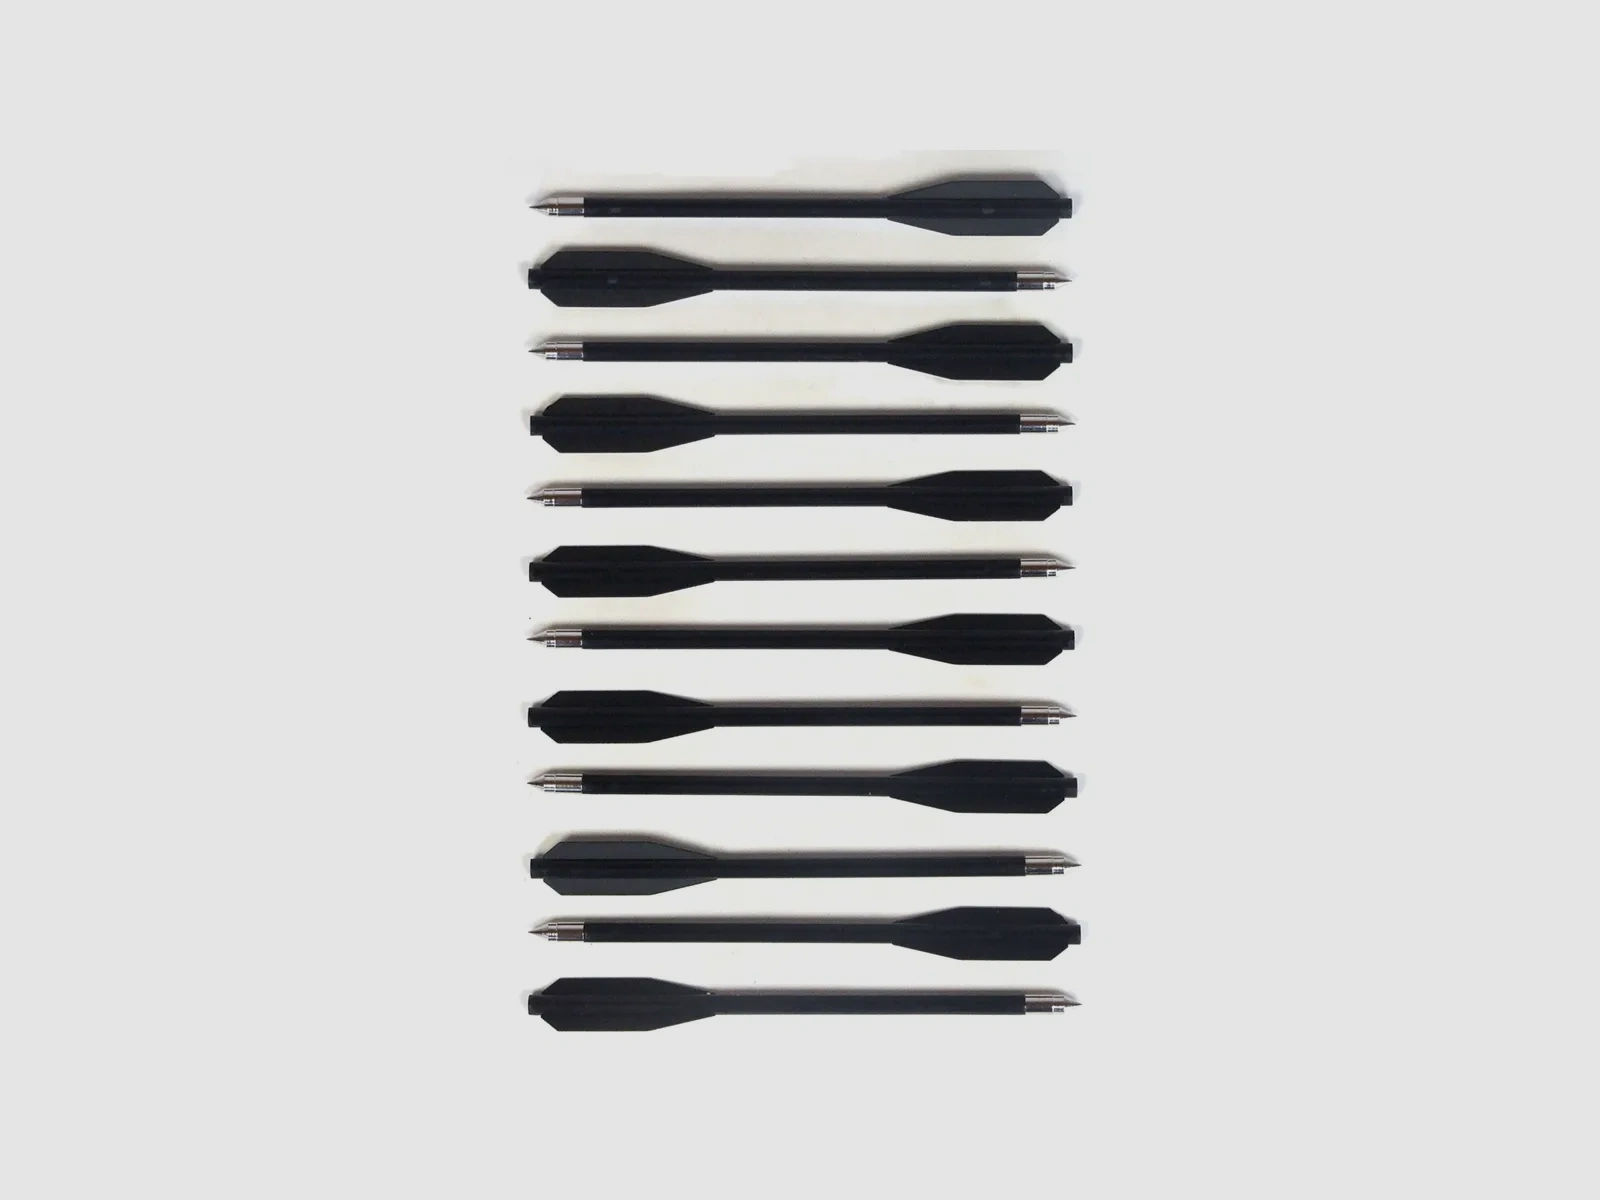 12 St.-Pack Kunststoffpfeile für Armbrüste 50lbs, Farbe: Schwarz